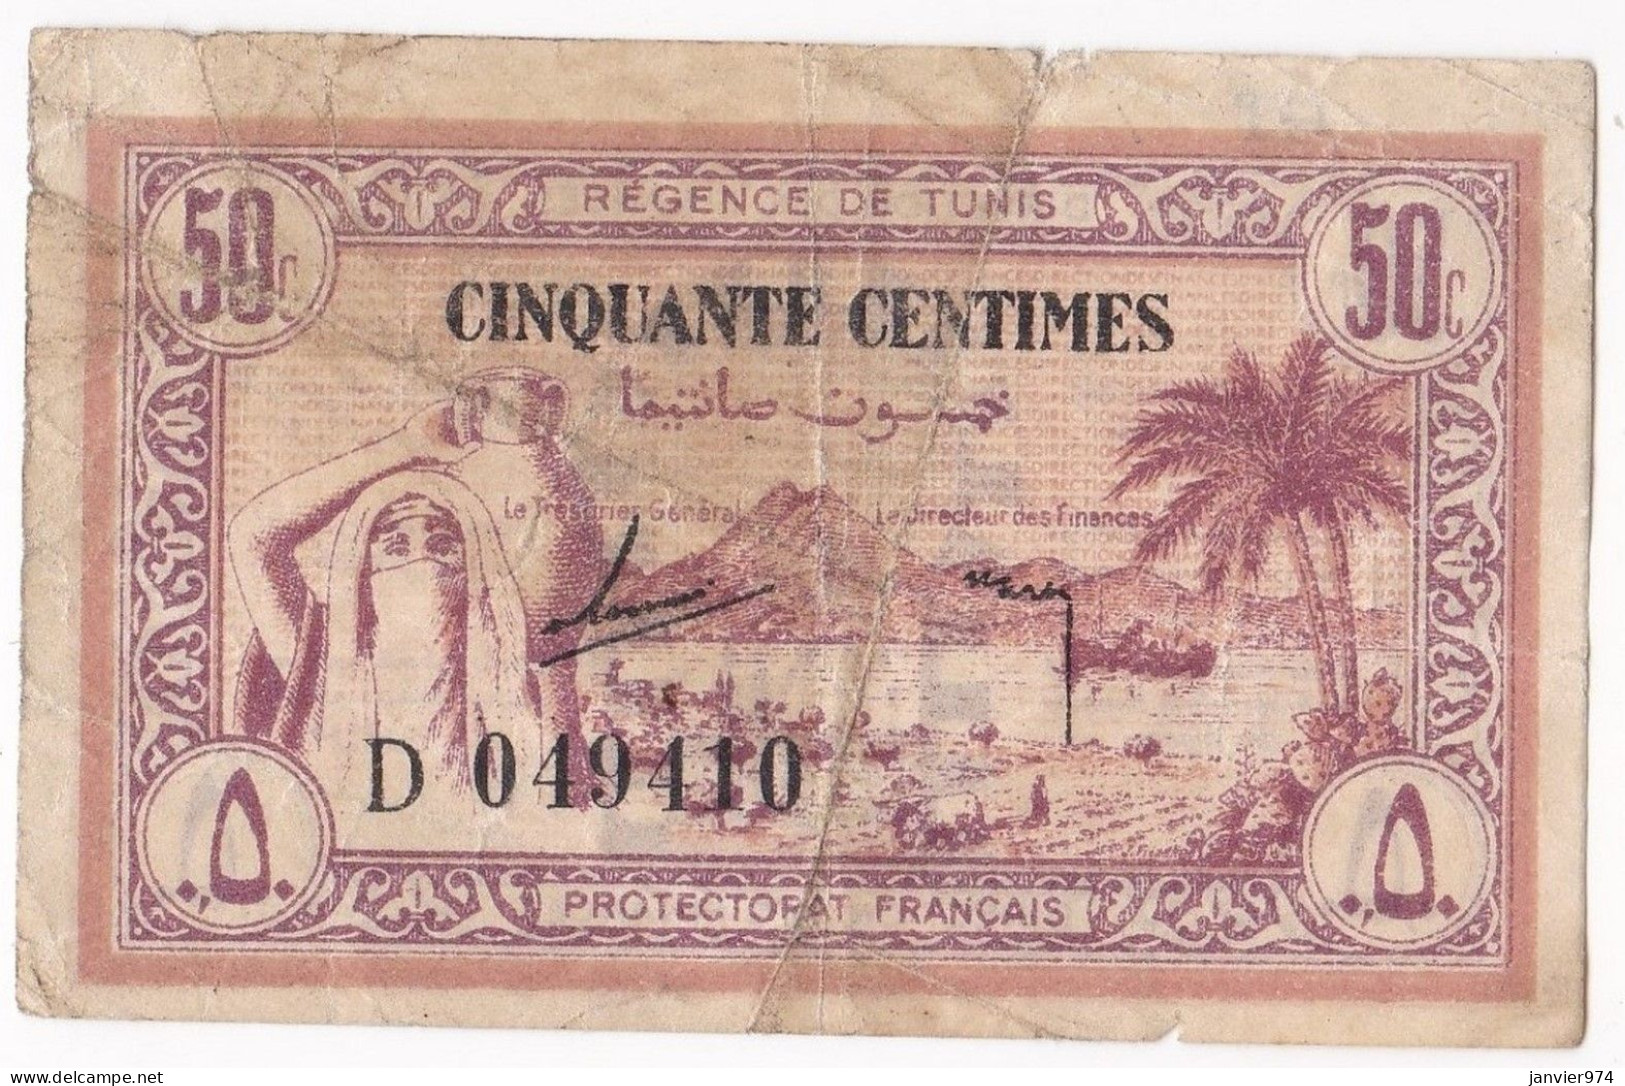 Régence De Tunis Protectorat Français 50 Centimes 1943 Direction Des Finances, Serie D 049410 - Tunisia